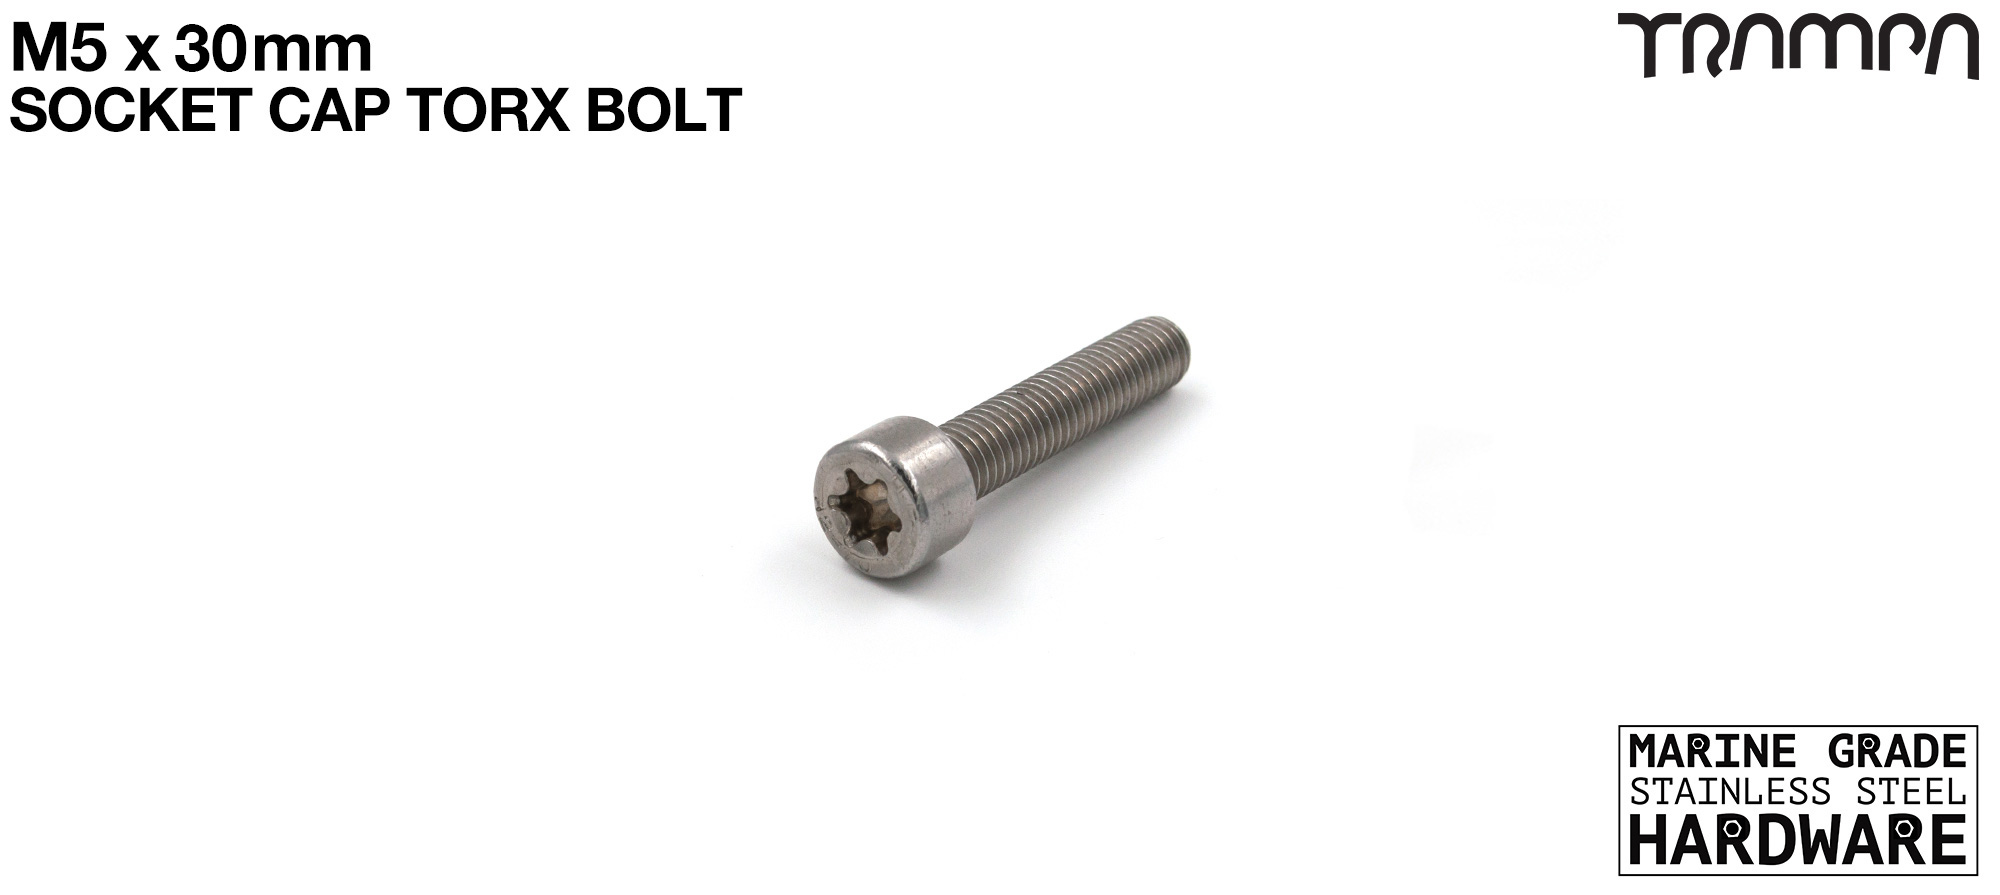 M5 x 30 Socket Capped TORX Bolt ISO 4762 Marine Grade Stainless Steel 